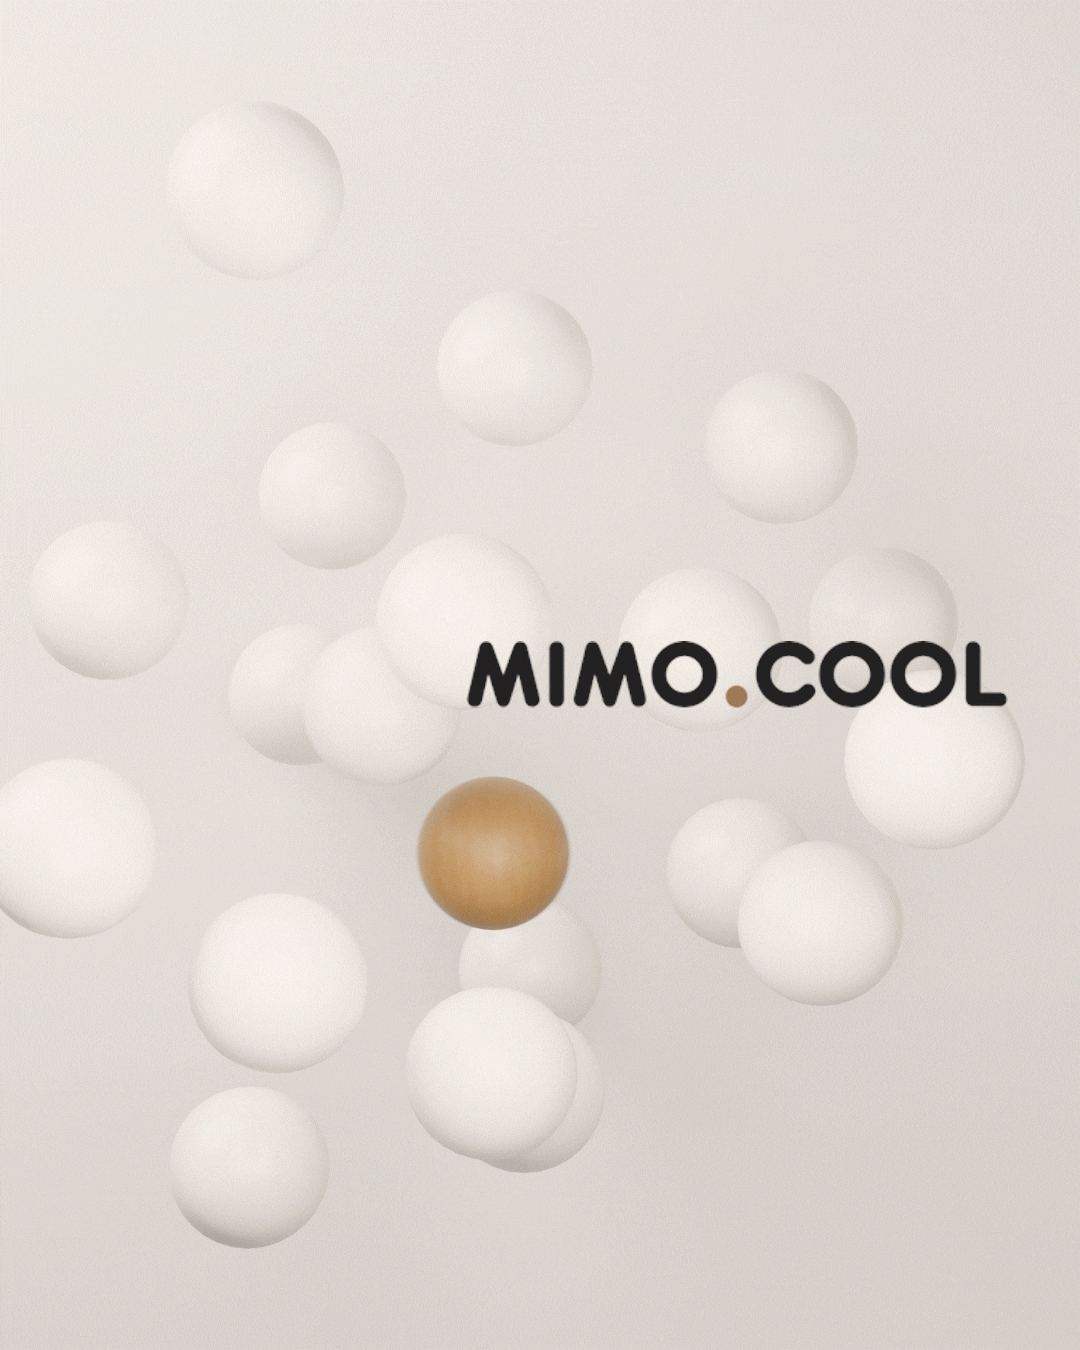 Mimo.Cool儿童时装品牌形象设计